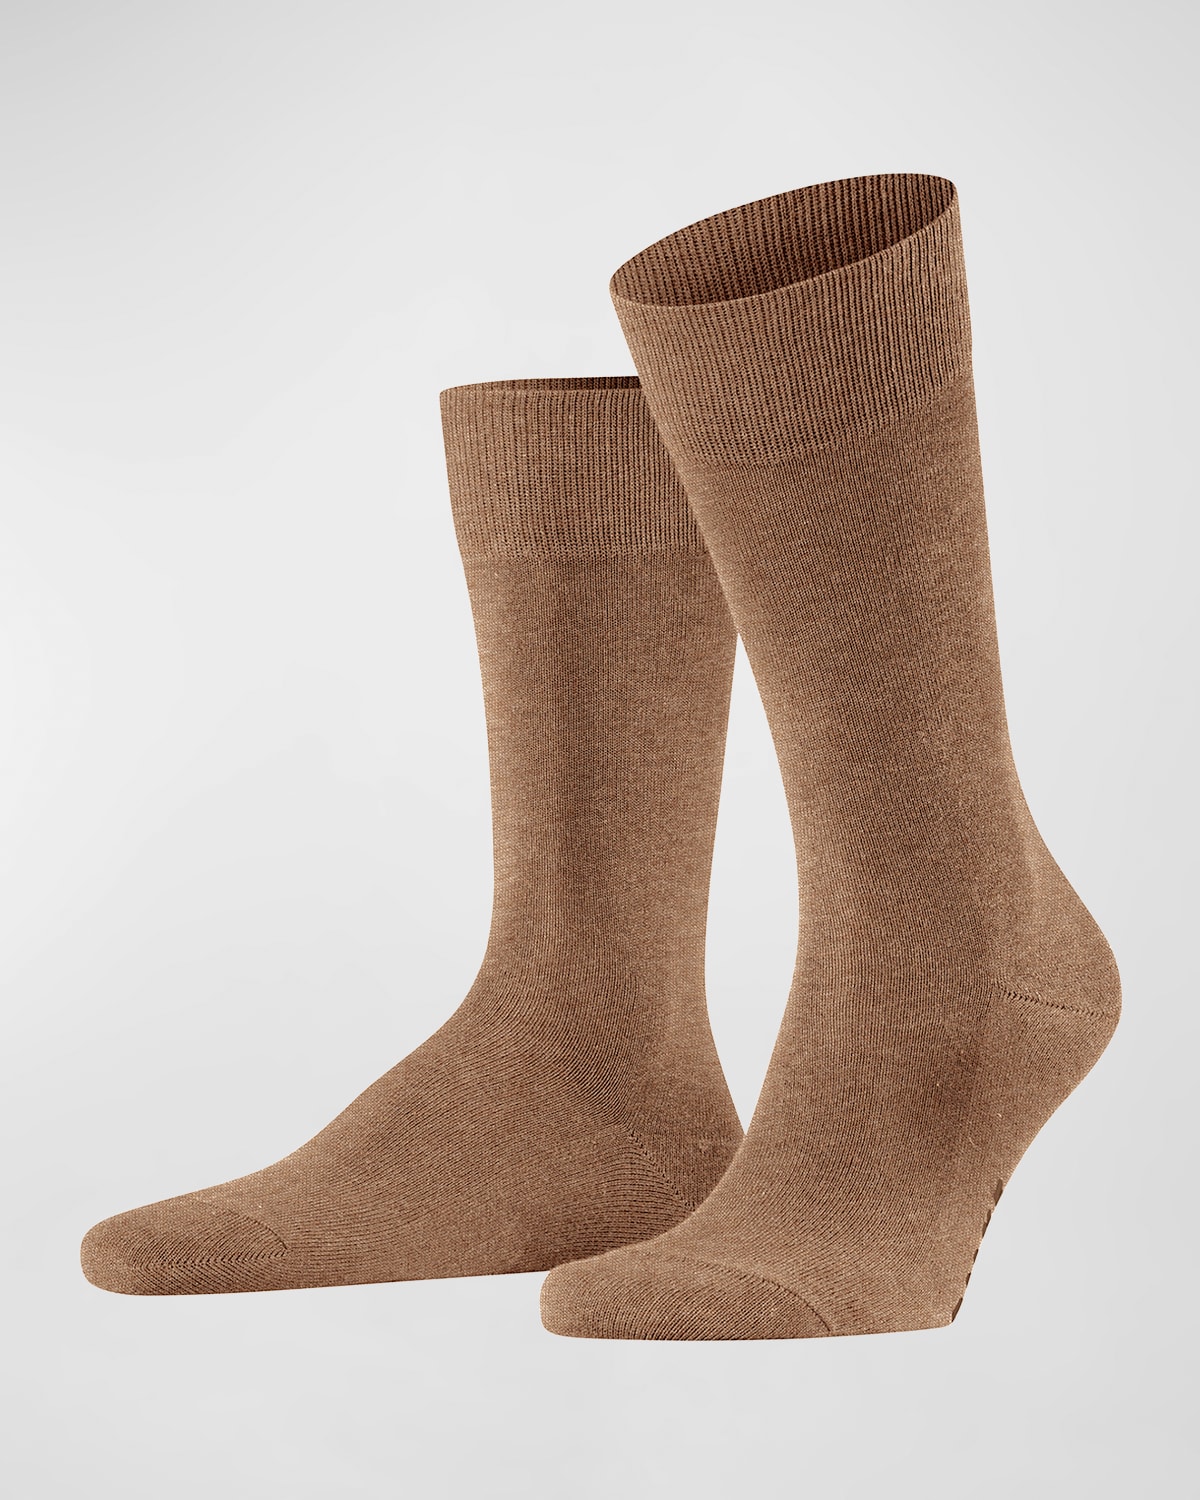 Men's Family Cotton Mid-Calf Socks